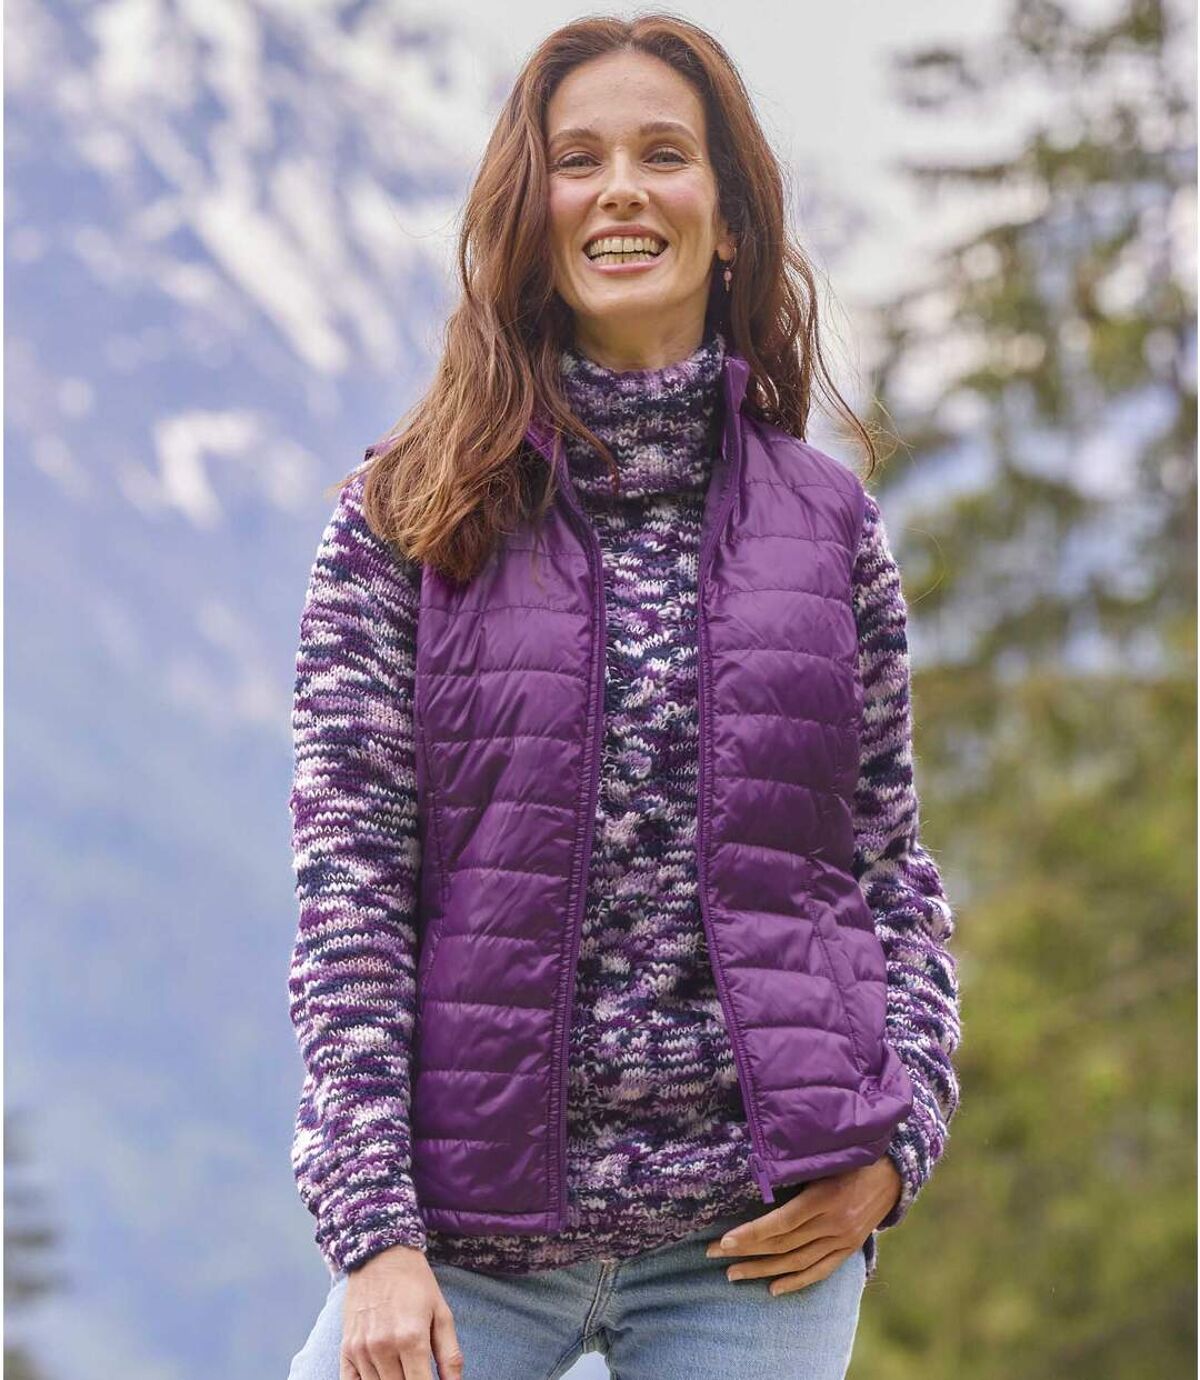 Women's Purple Padded Vest Atlas For Men